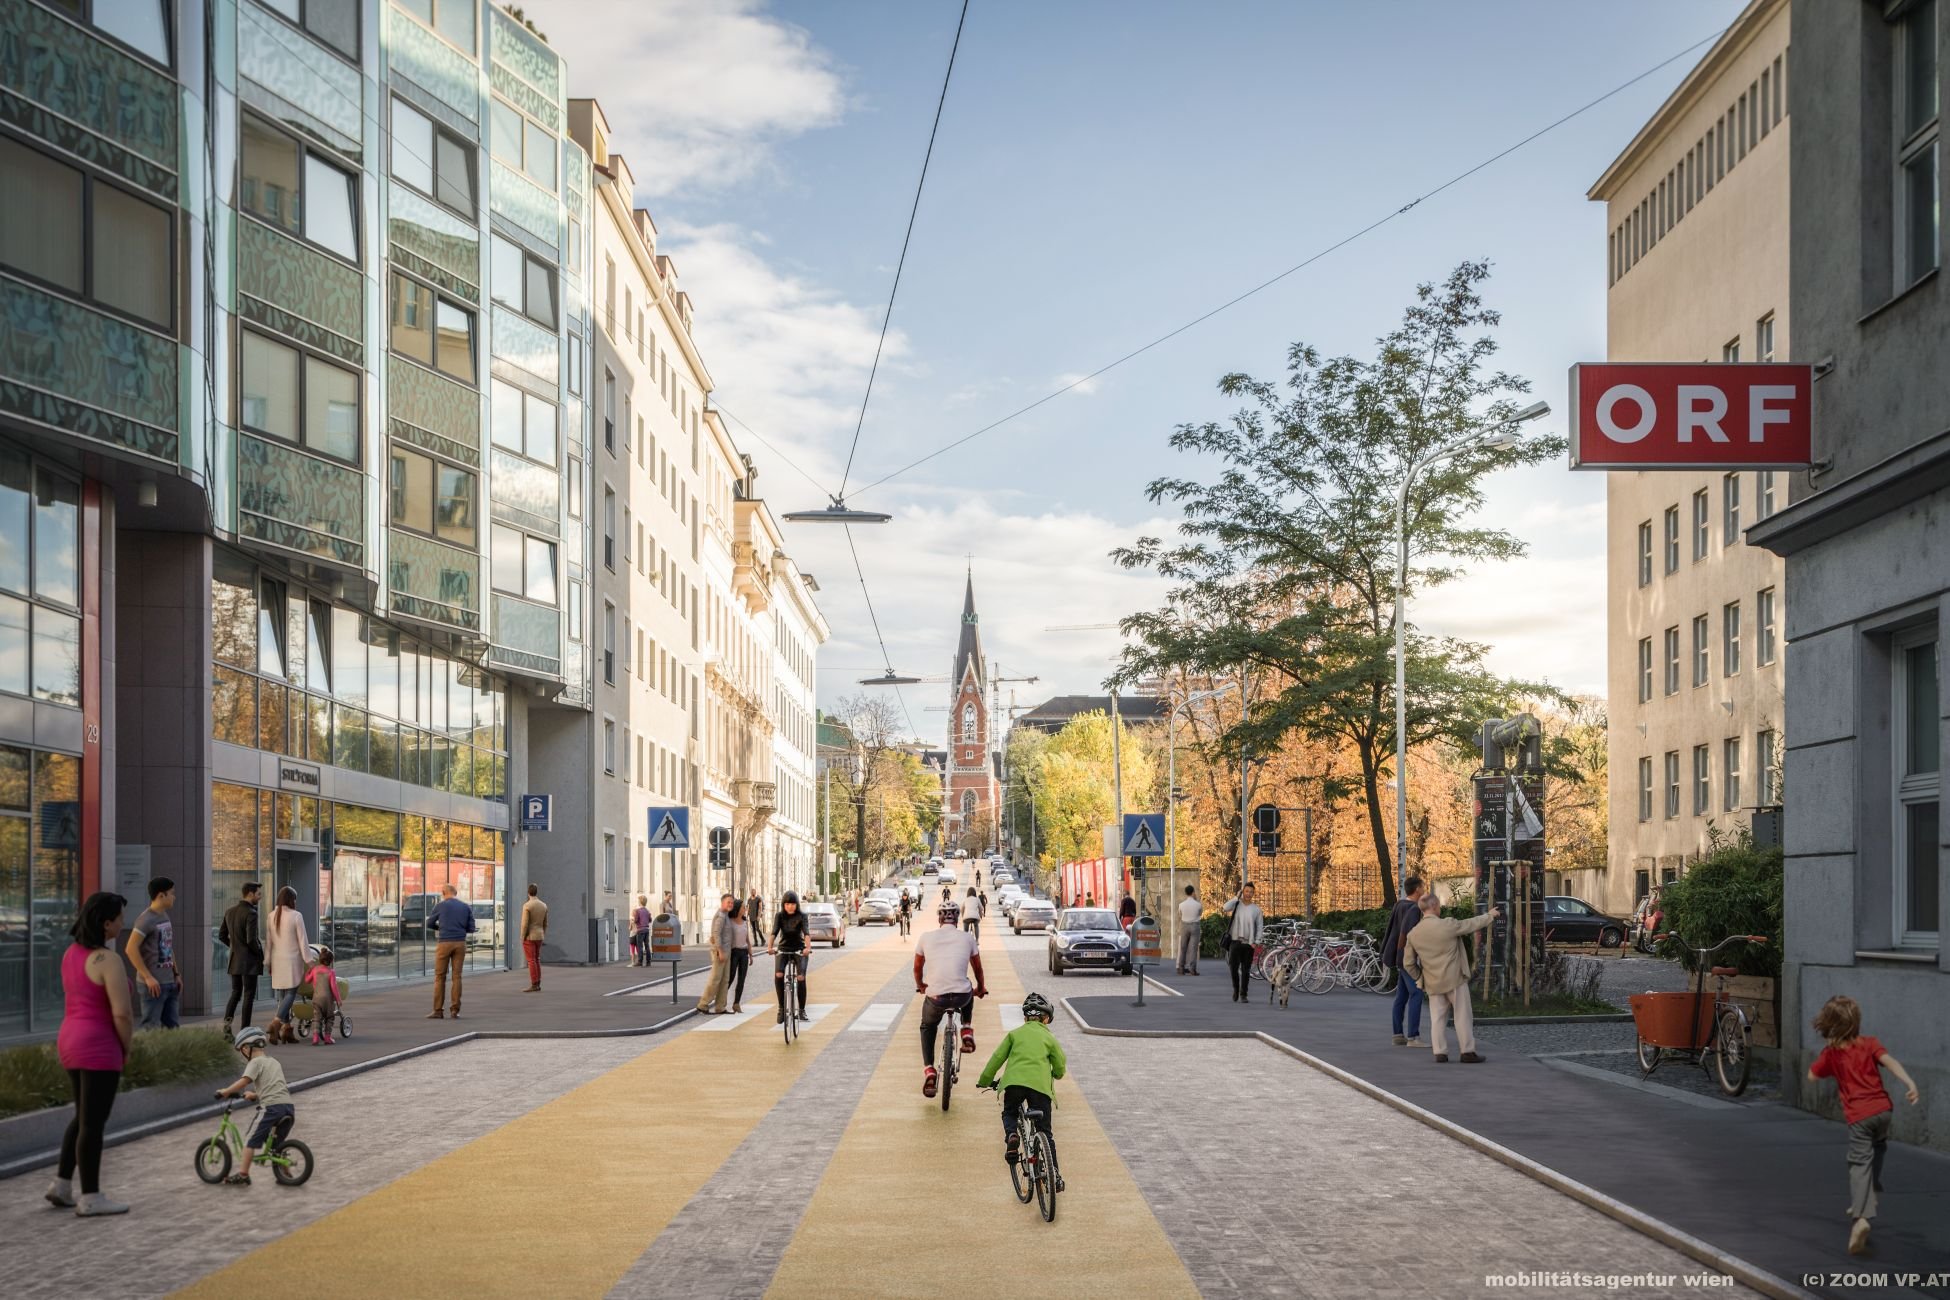 Vídeň: zcela nové pojetí ulice s větším prostorem pro chodce a cyklisty a omezeným vjezdem pro auta.